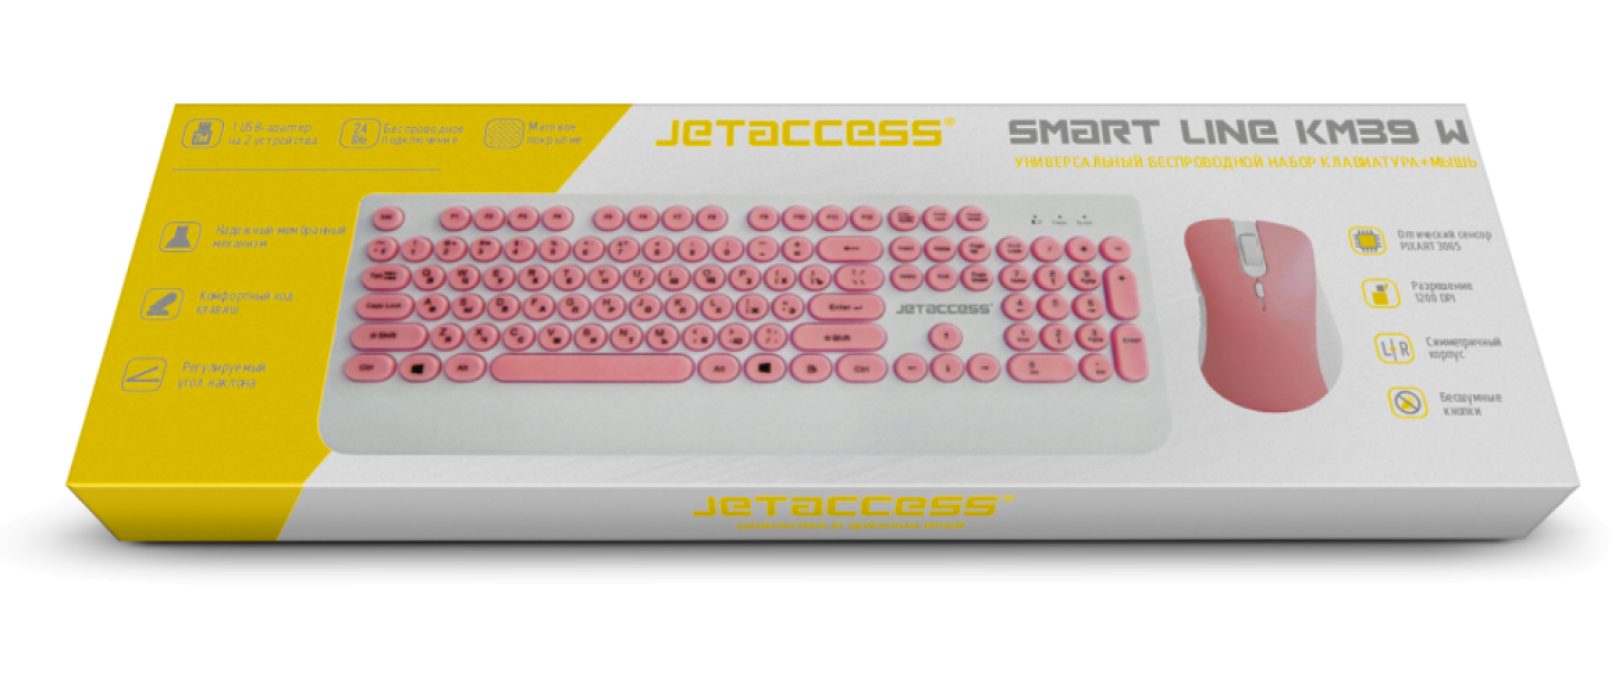 Универсальный беспроводной набор клавиатура + мышь SMART LINE KM39 W6